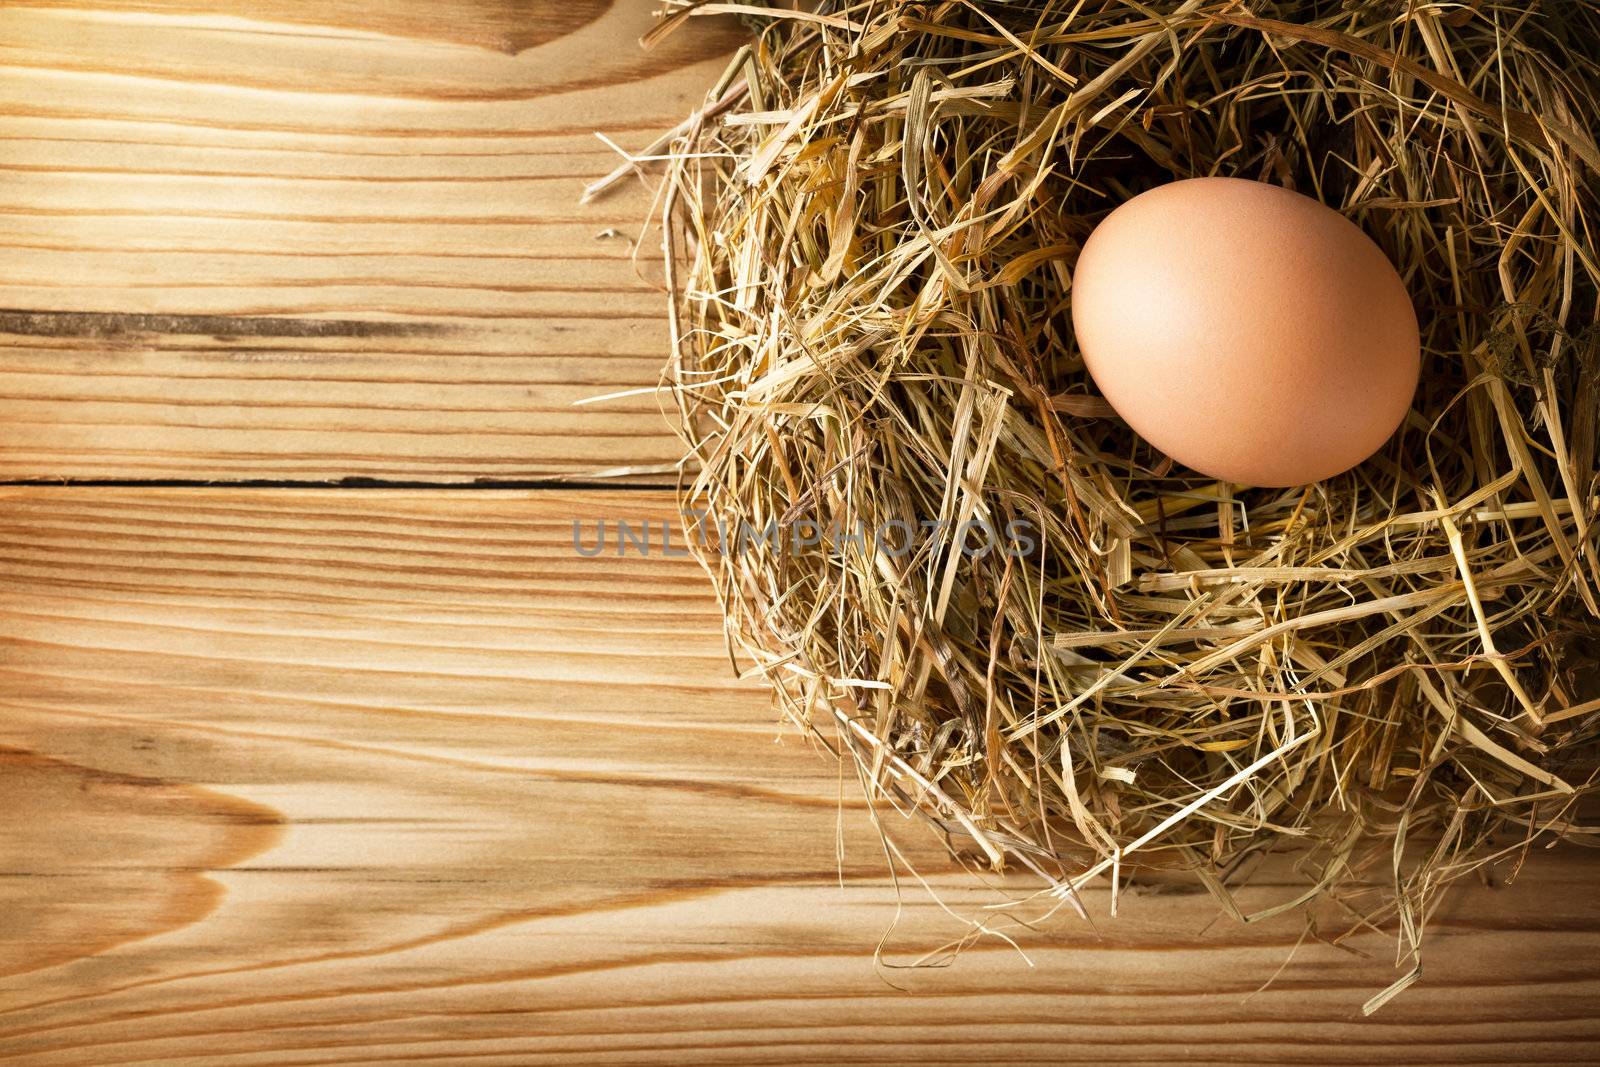 Egg in nest by bozena_fulawka